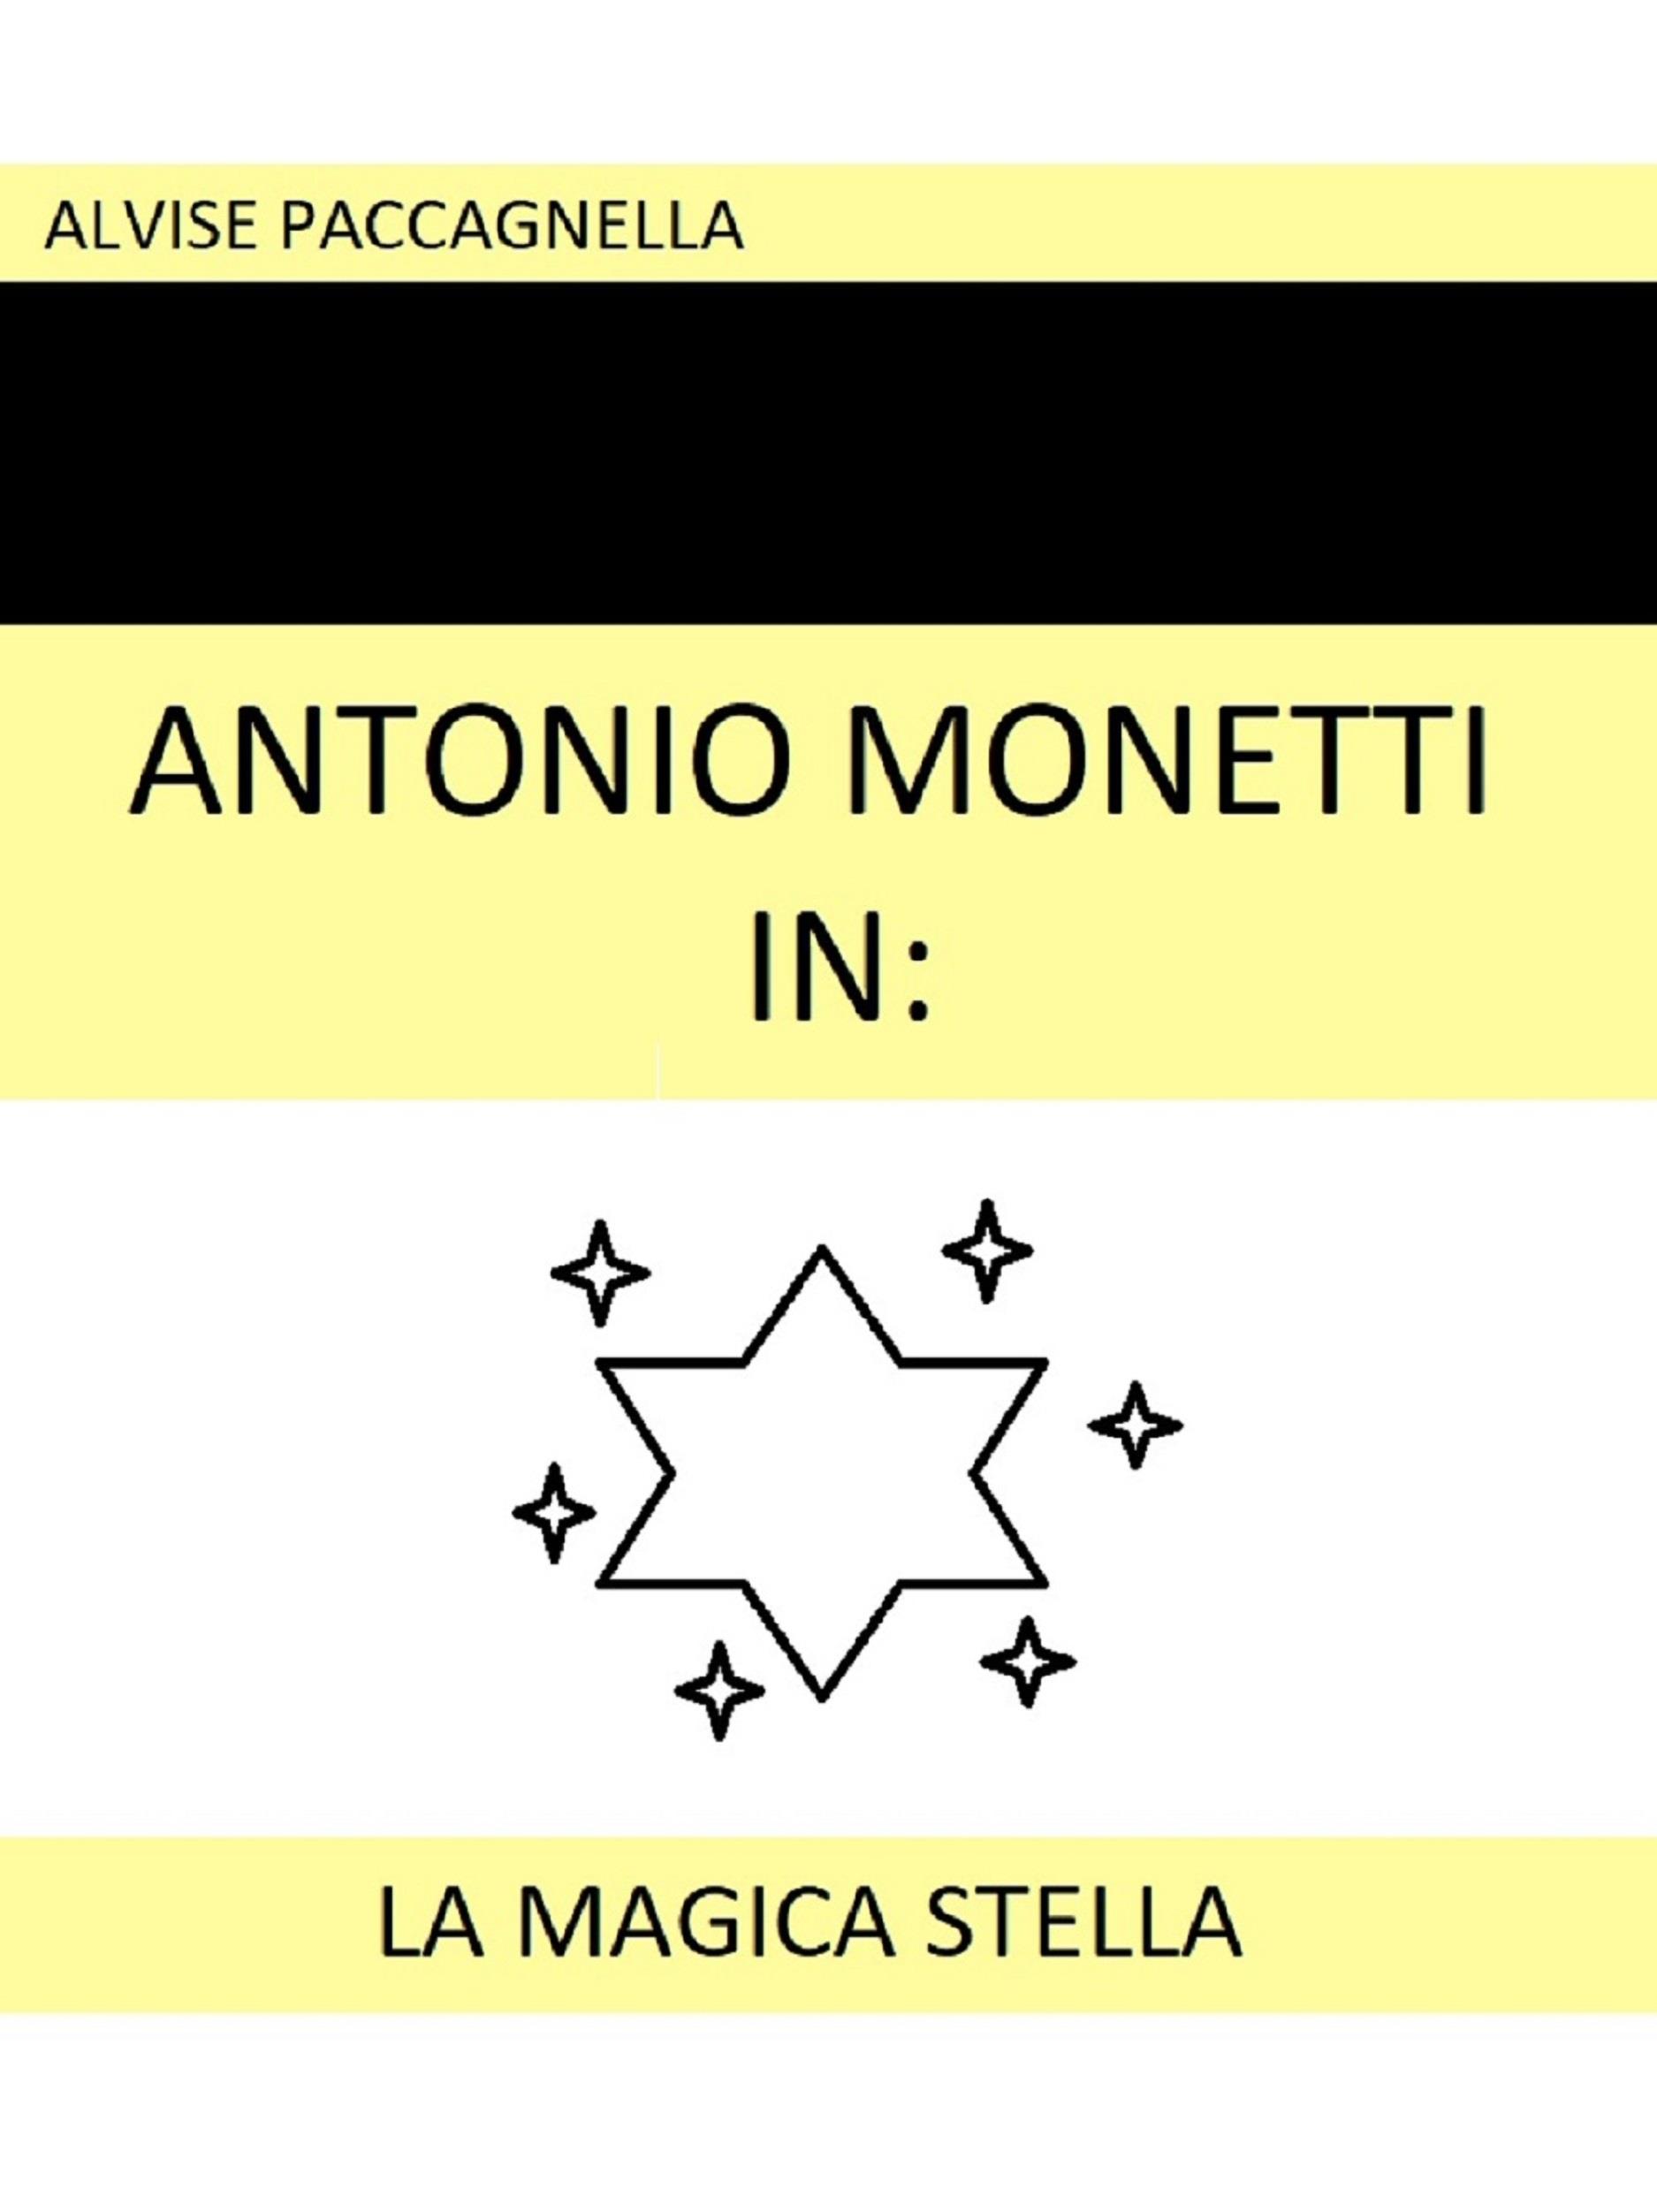 Antonio Monetti in: "La magica stella"